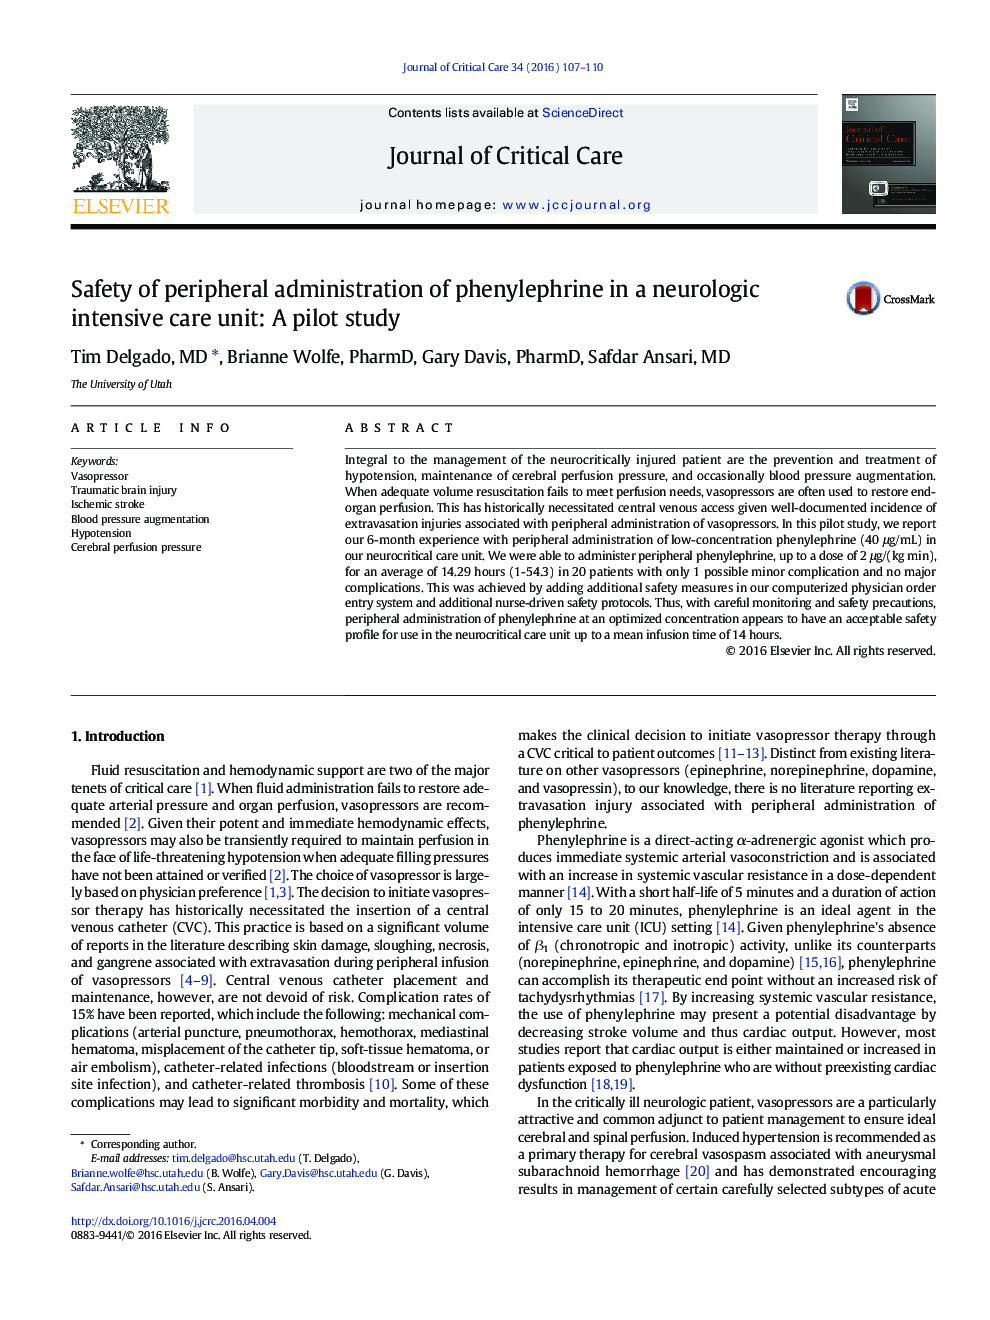 کلینیک پوپورری ایمن سازی مصرف محیطی فنیل افرین در بخش مراقبت های ویژه نورولوژیک: یک مطالعه آزمایشی 